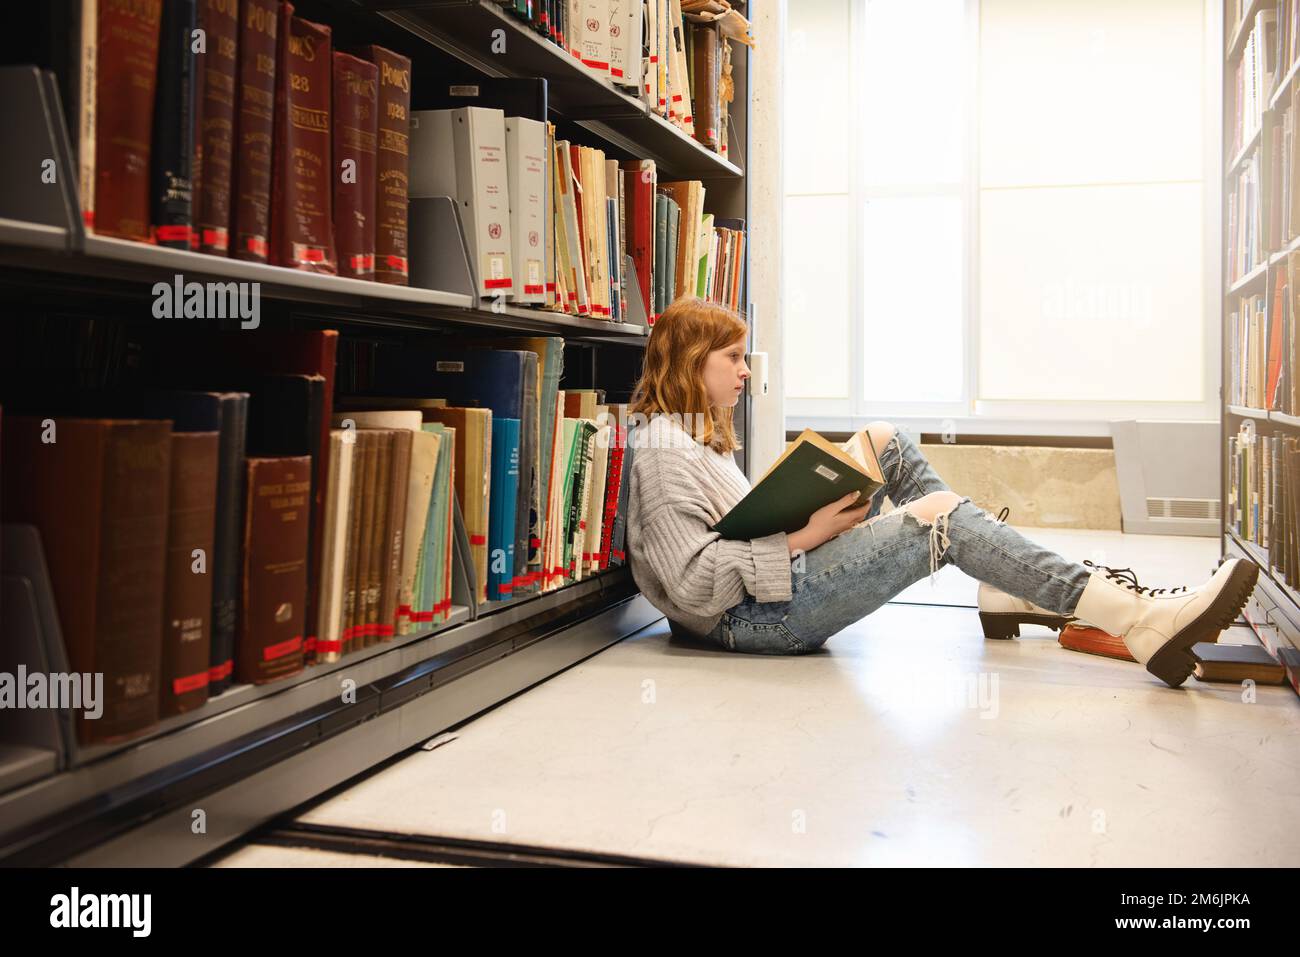 Ein Mädchen mit roten Haaren, das auf dem Boden sitzt und vor Bücherregalen liest. Stockfoto